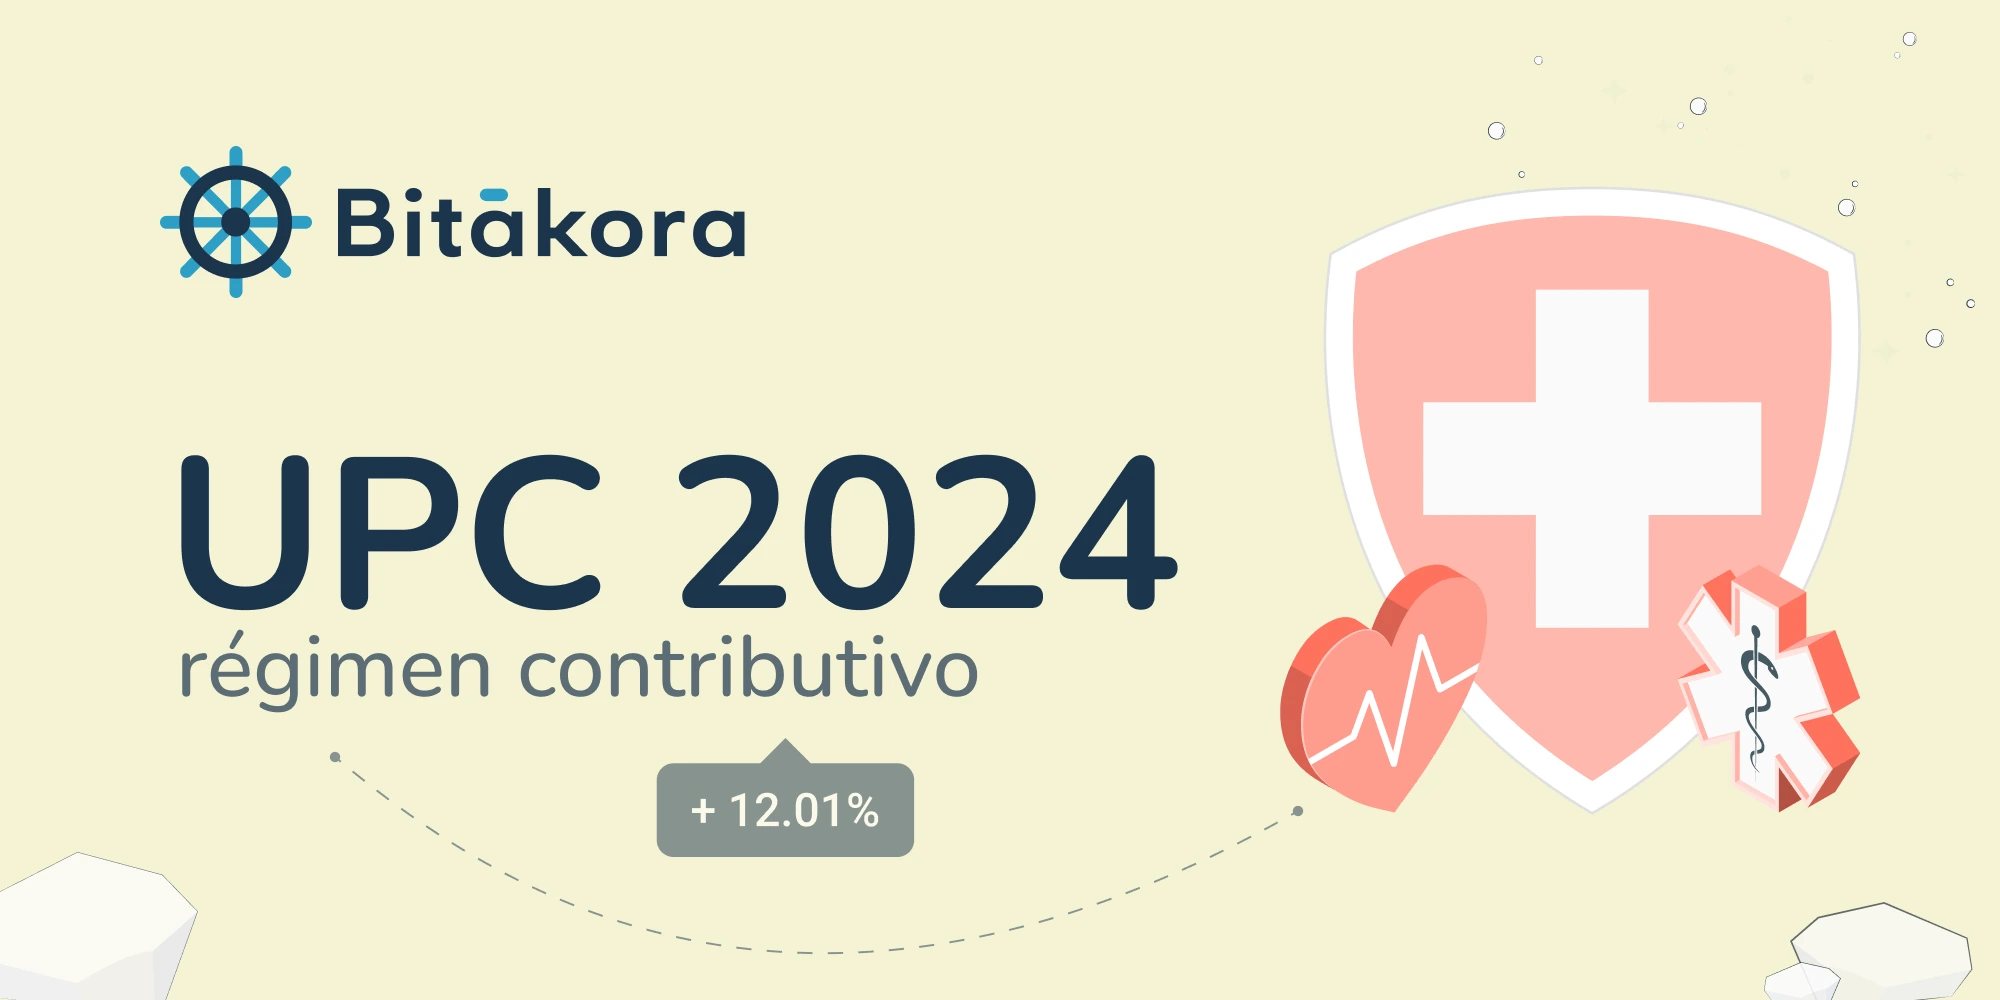 Entrada Blog | UPC 2024 | imagen enfocada a la salud y el porcentaje de aumento del 12.01%